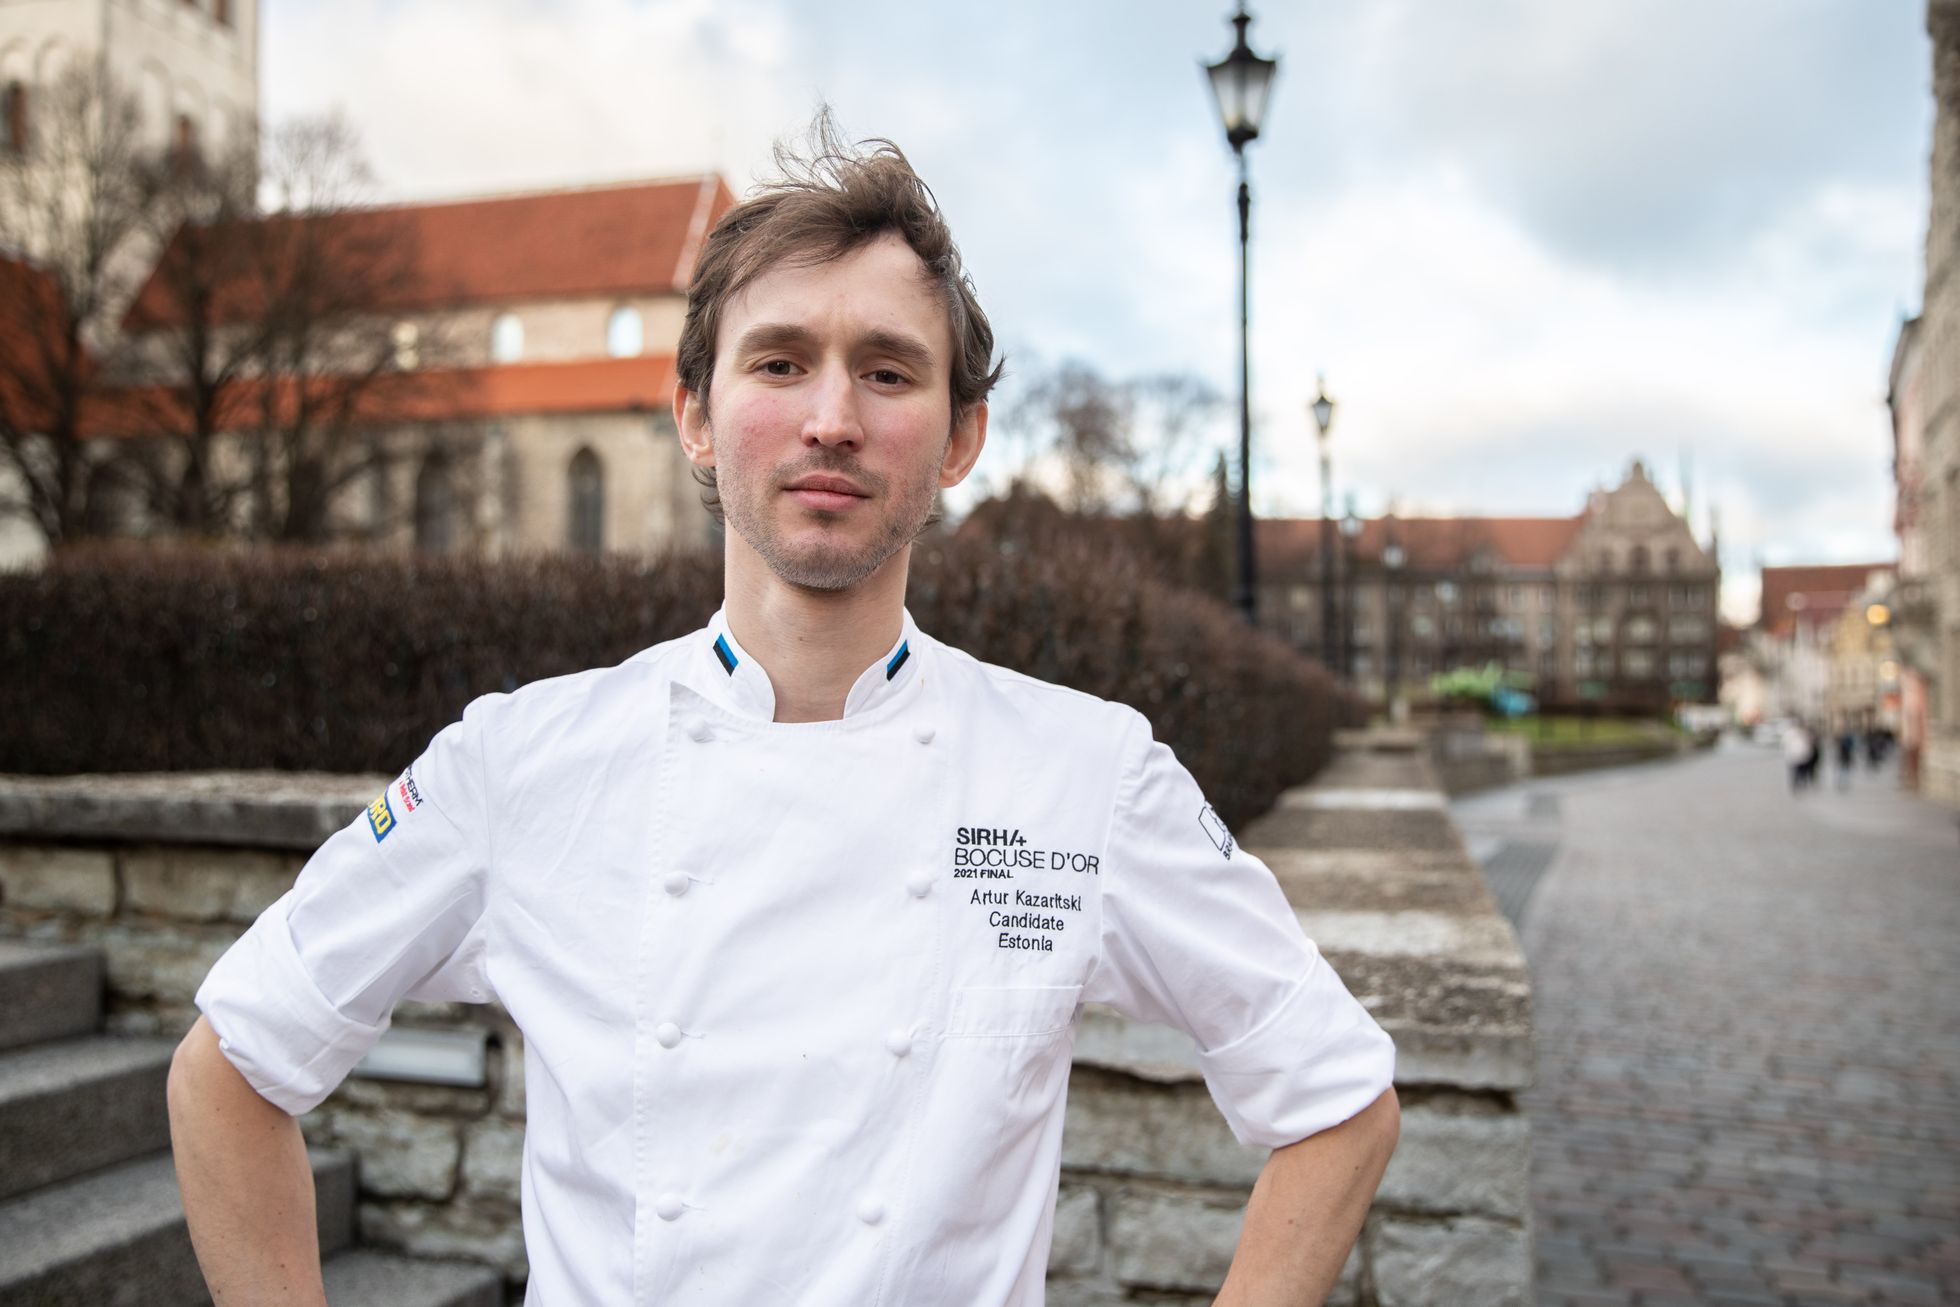  Tunnustatud kokk ja Eesti esindaja Bocuse D'ori kokandusvõistlusel Artur Kazaritski.